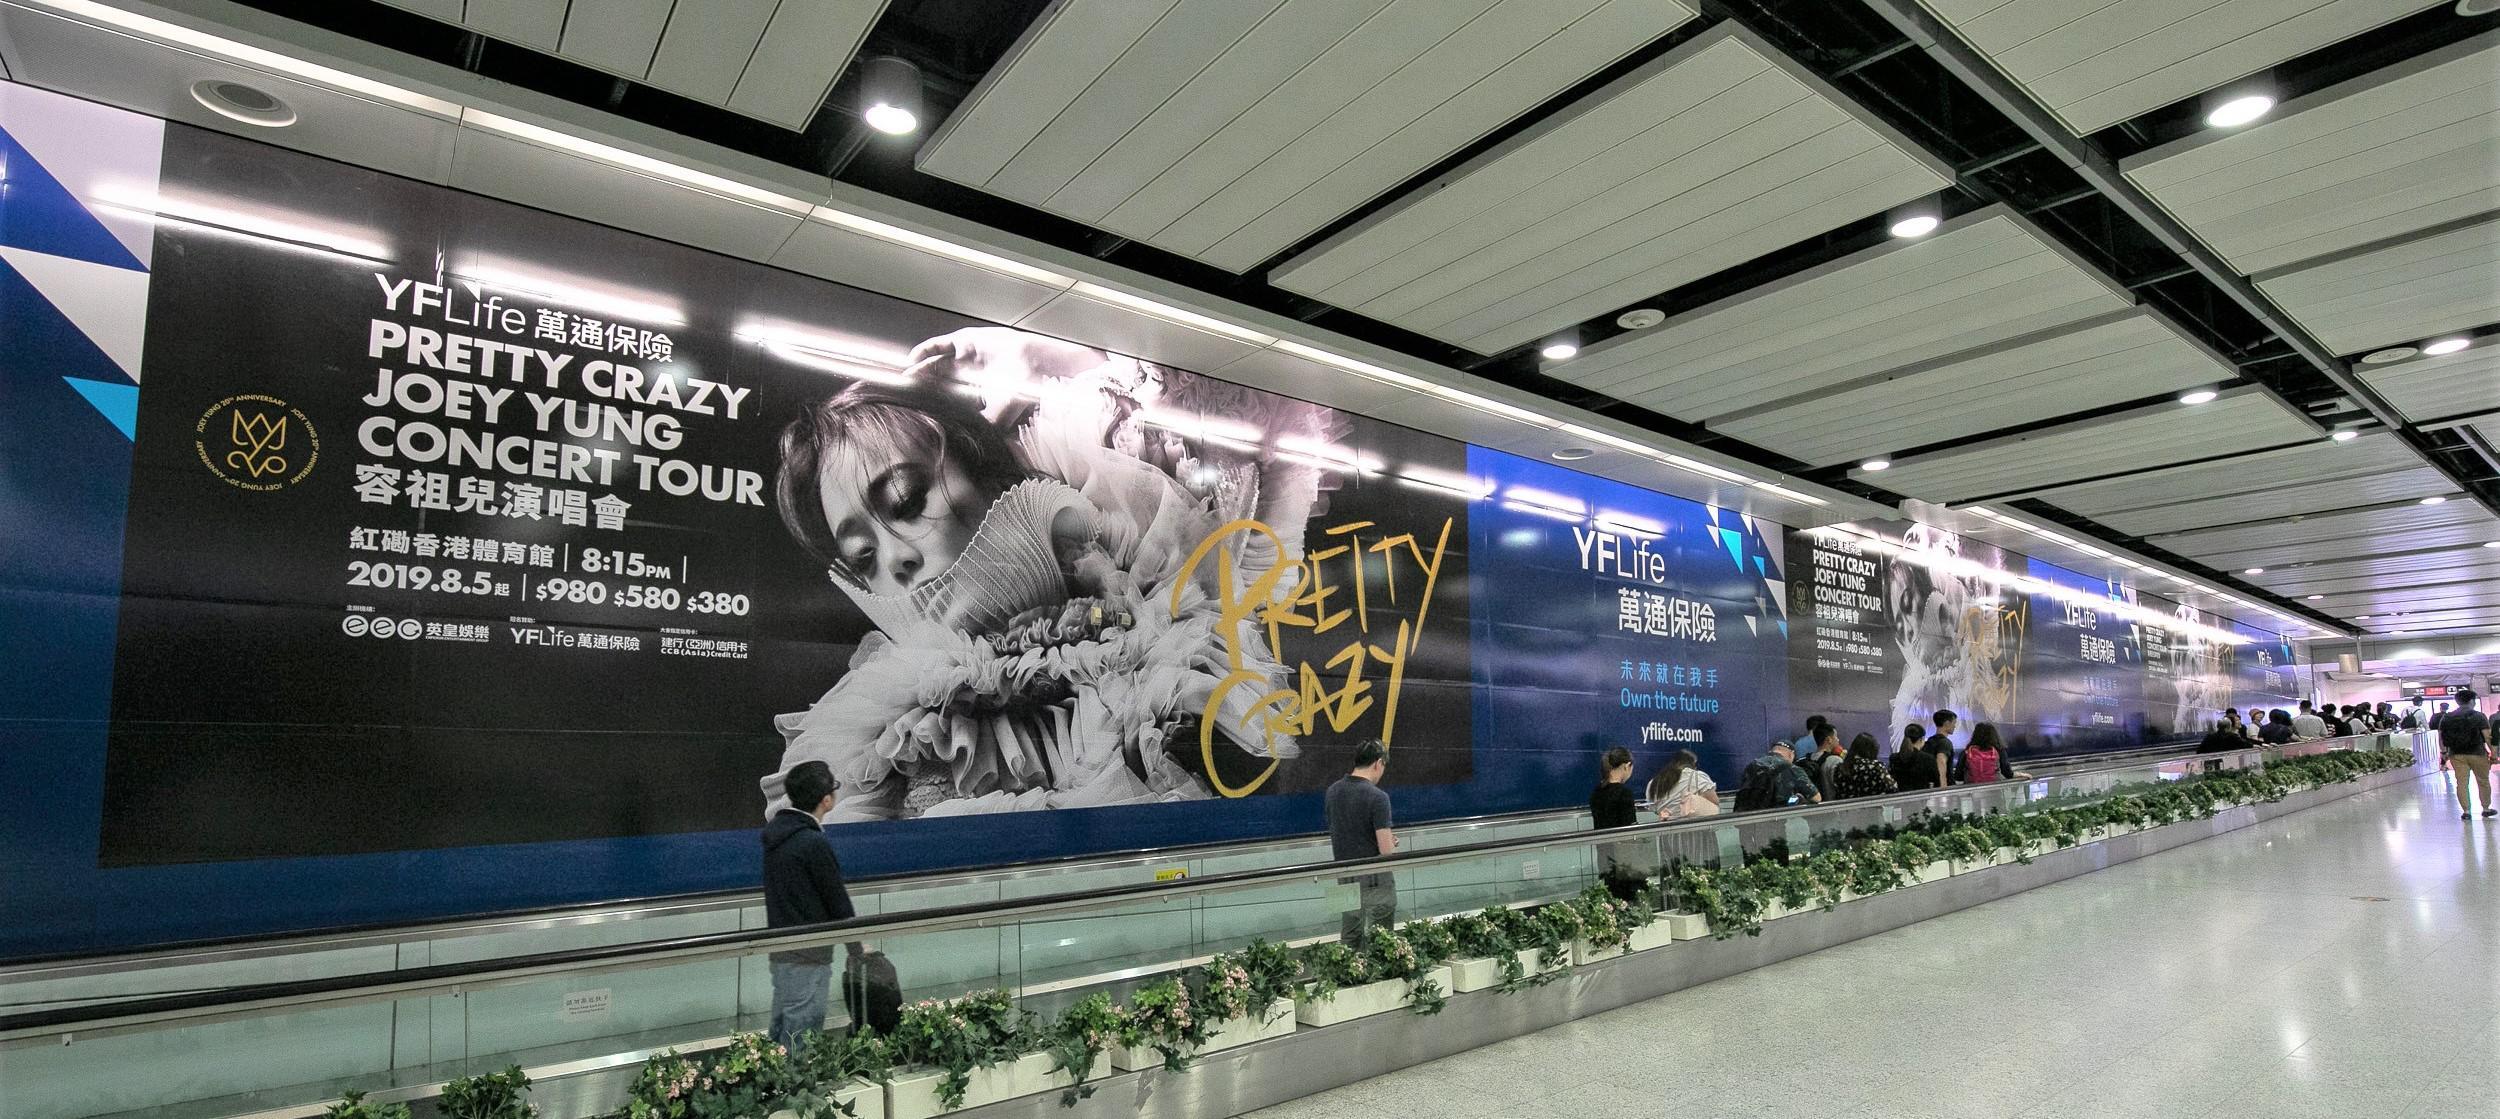 万通保险为《PRETTY CRAZY JOEY YUNG CONCERT TOUR》推出大型广告企划，复盖全港。